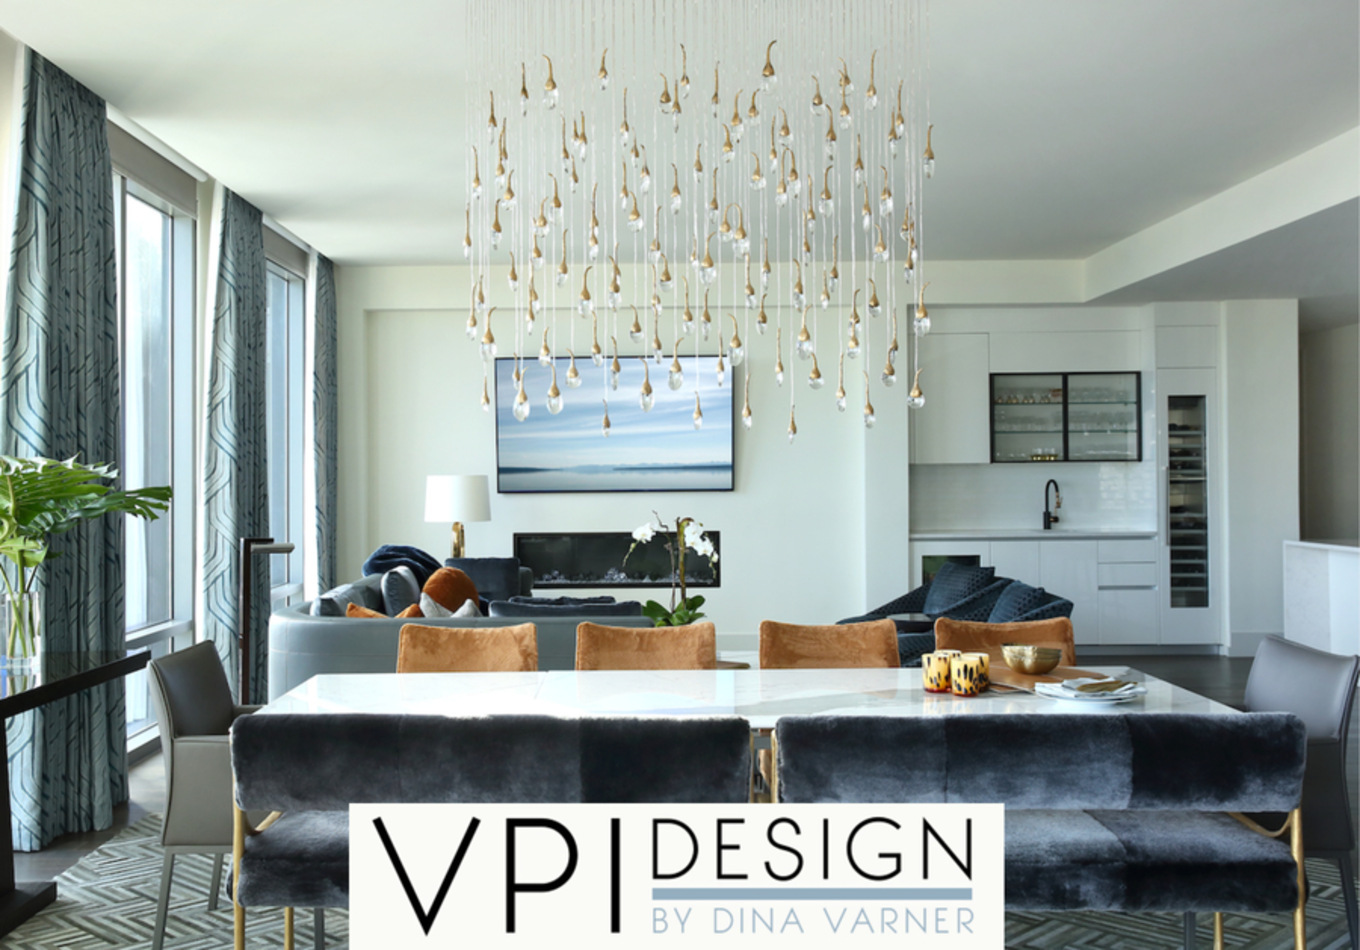 VPI Design, Friday, April 30, 2021, Press release picture